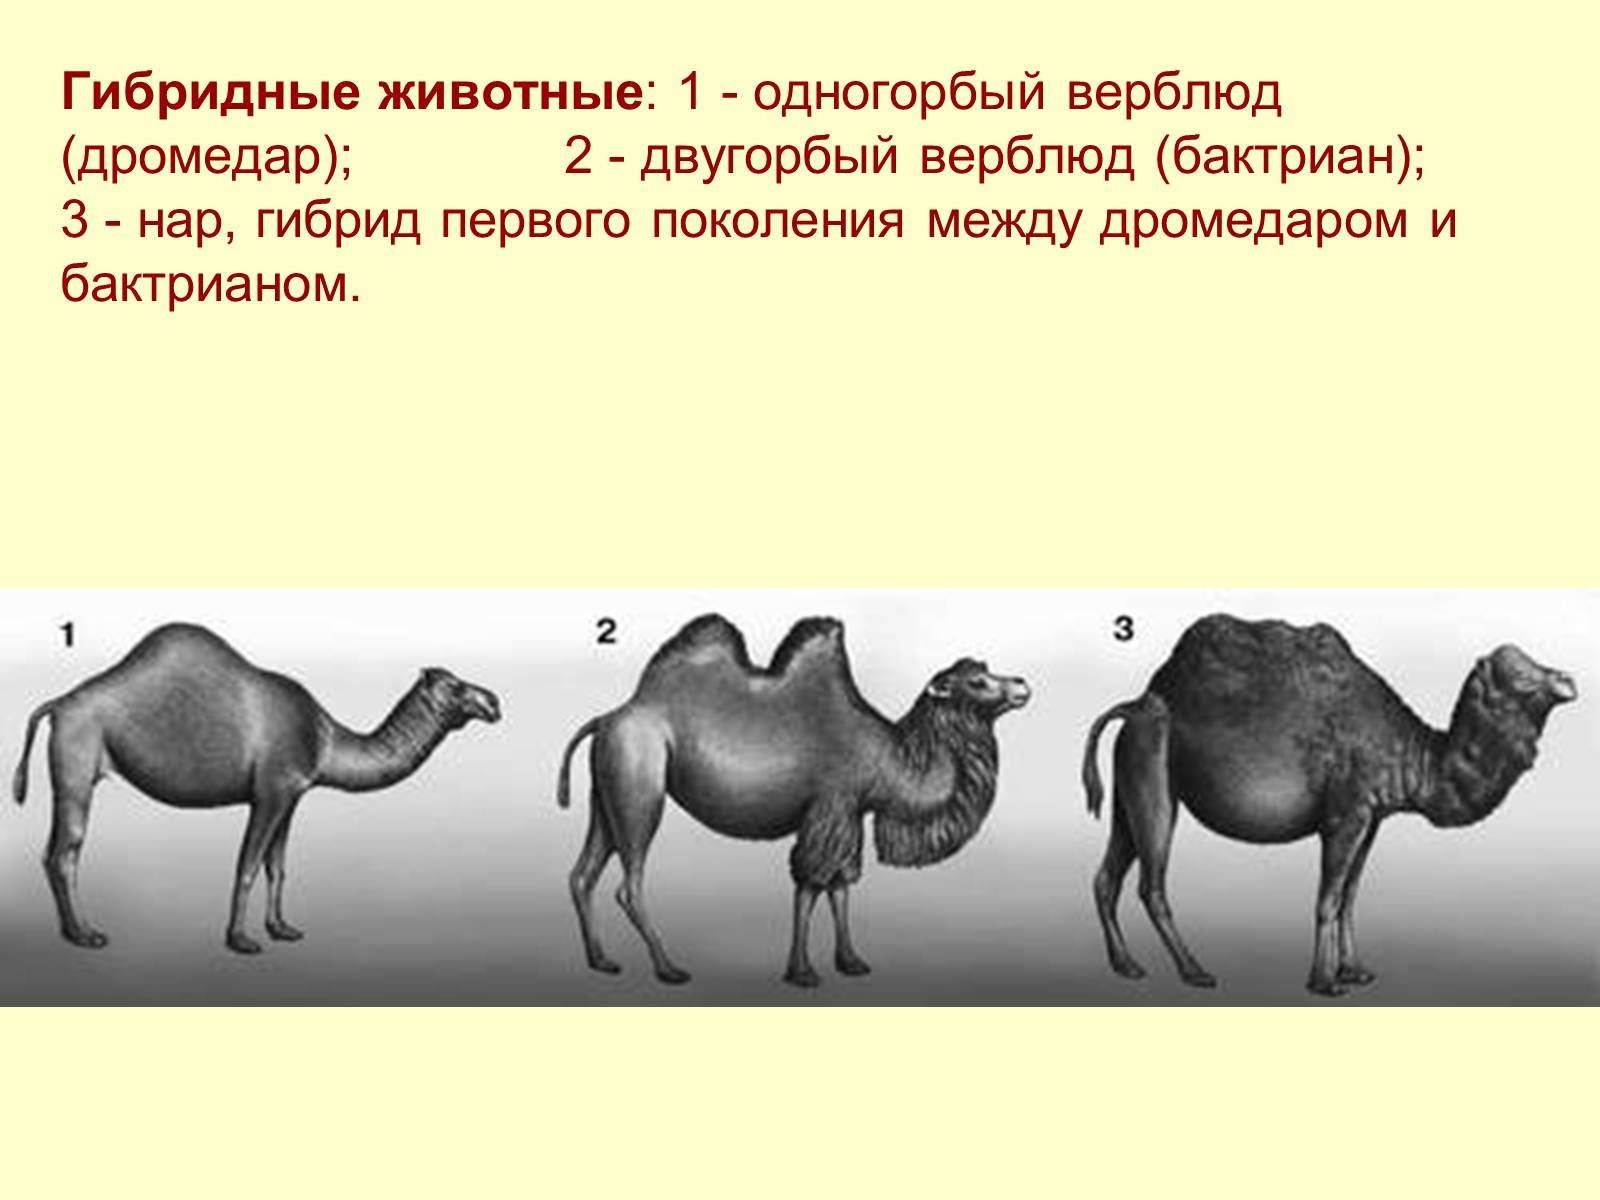 Гибрид двугорбого и одногорбого верблюда